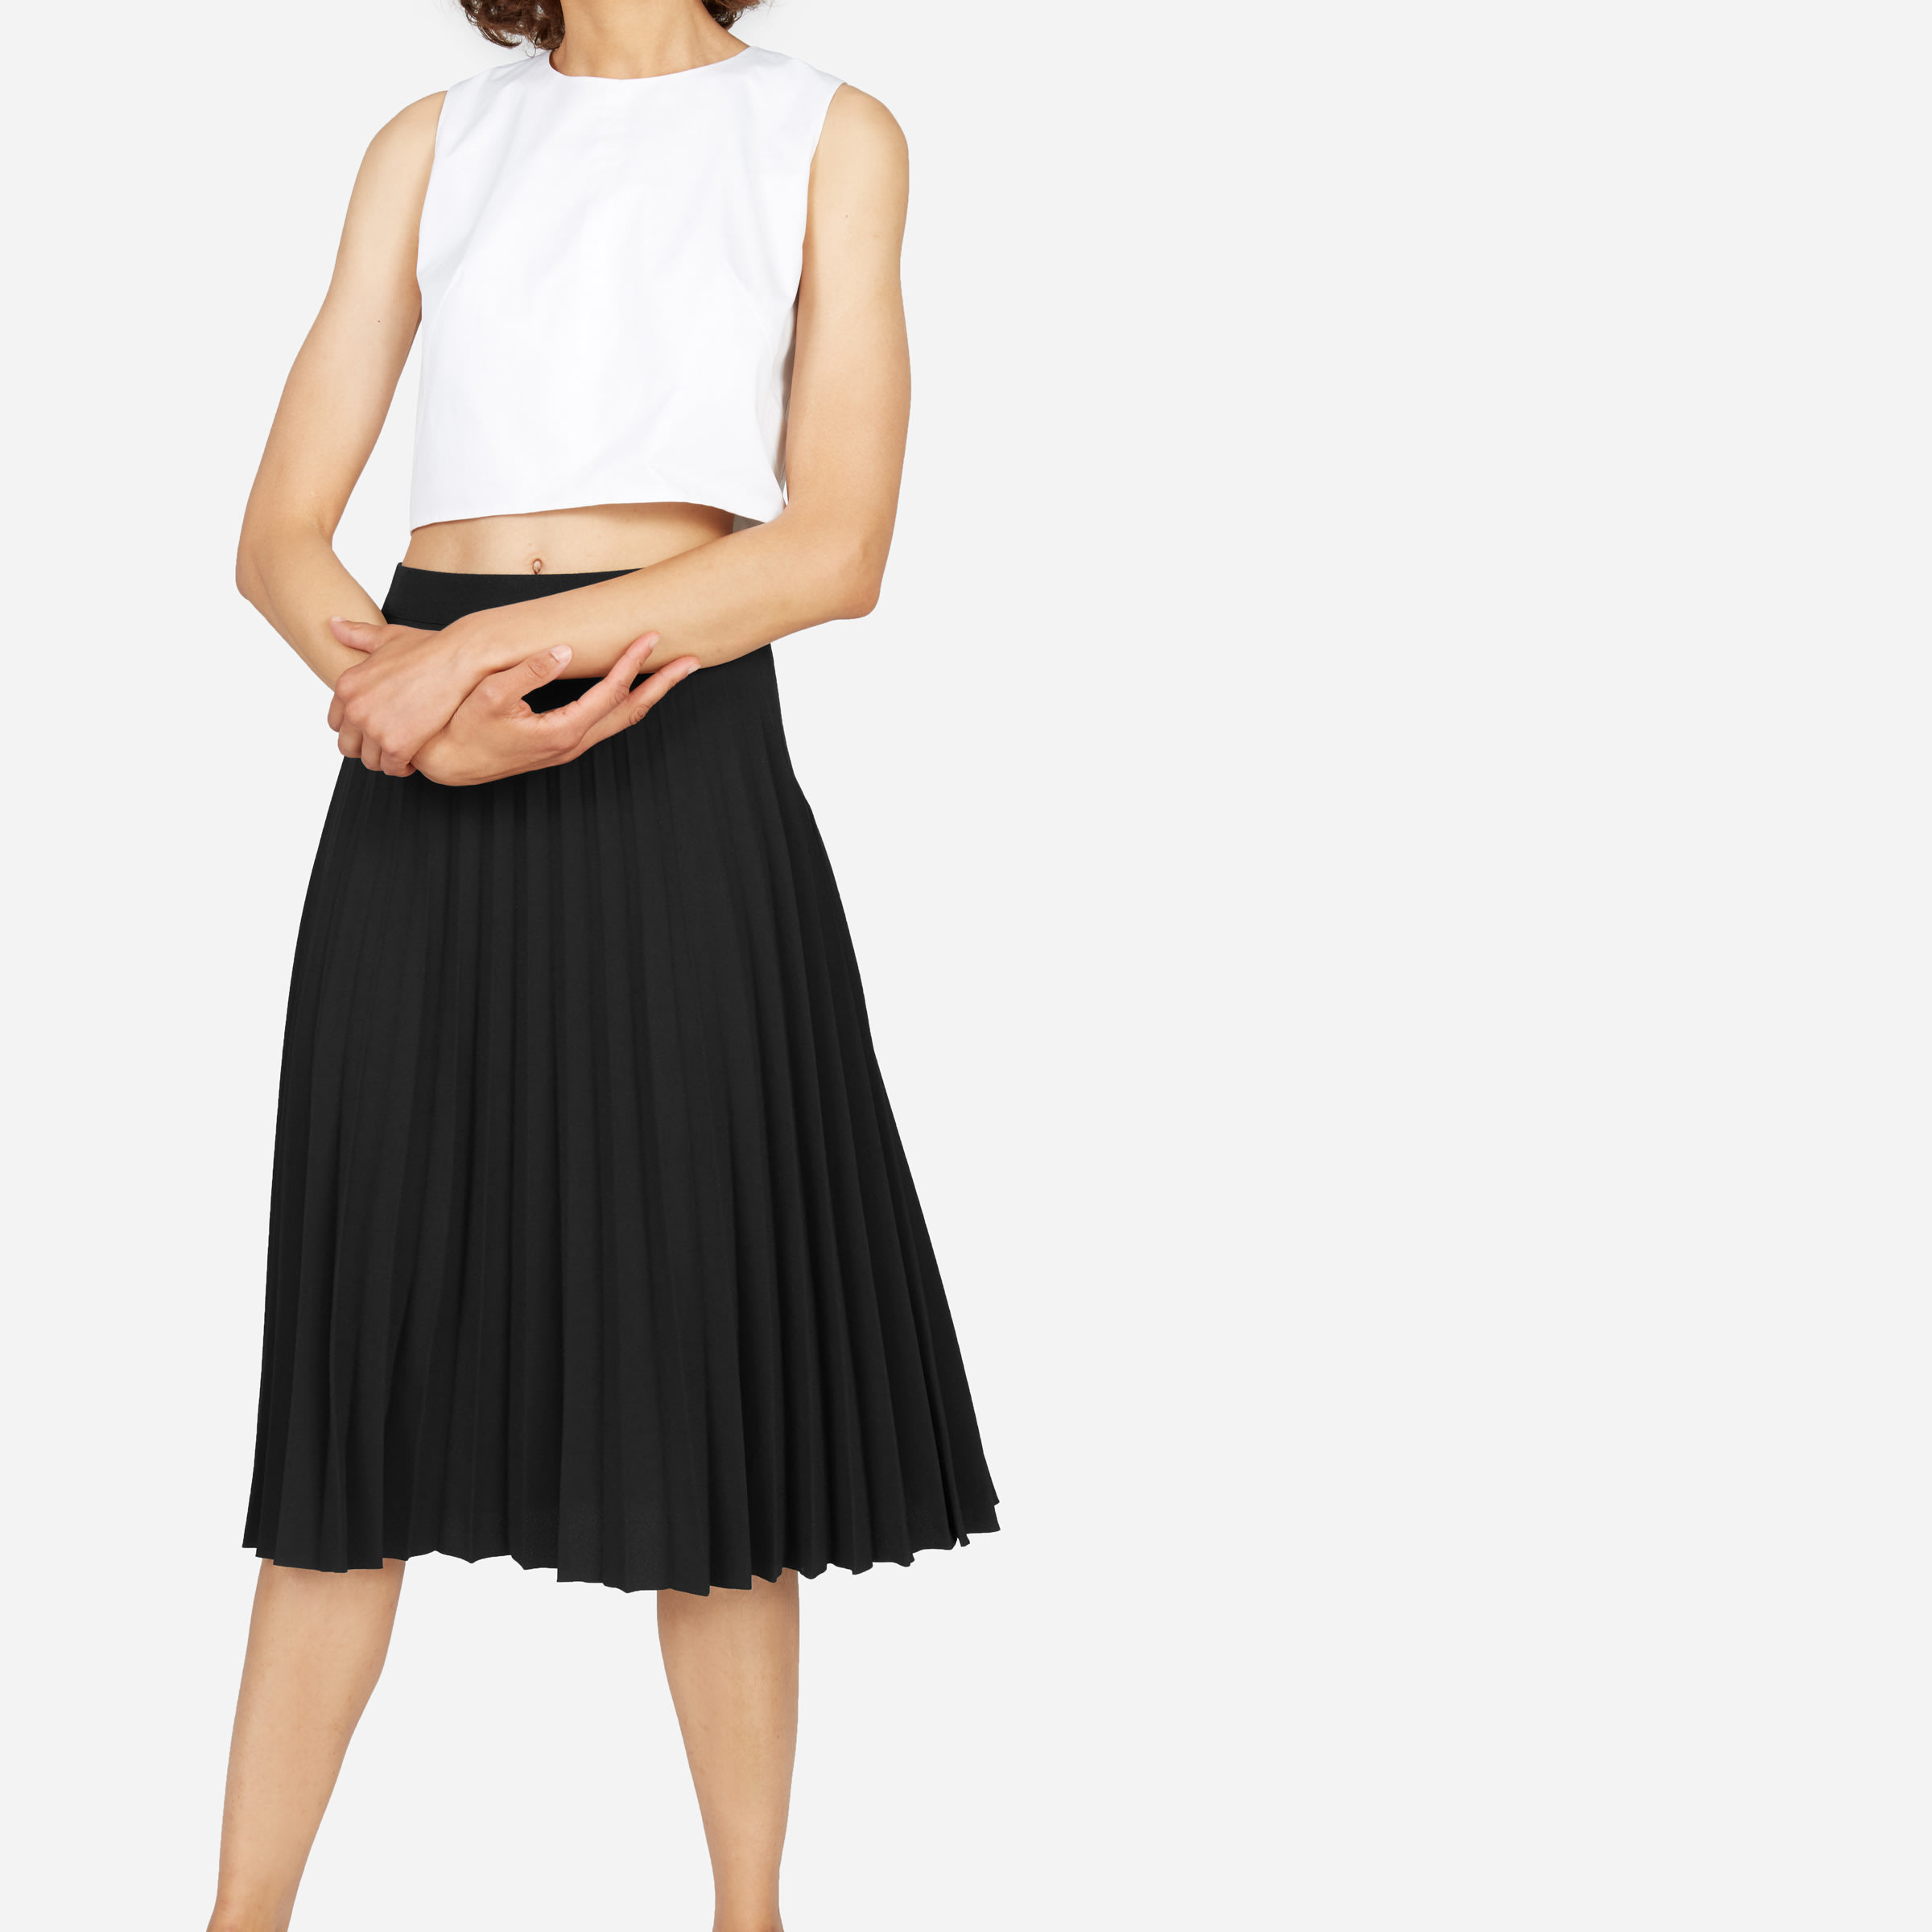 HERBATOMIA Pleated Midi Black Skirt High Elastic Waist A-line